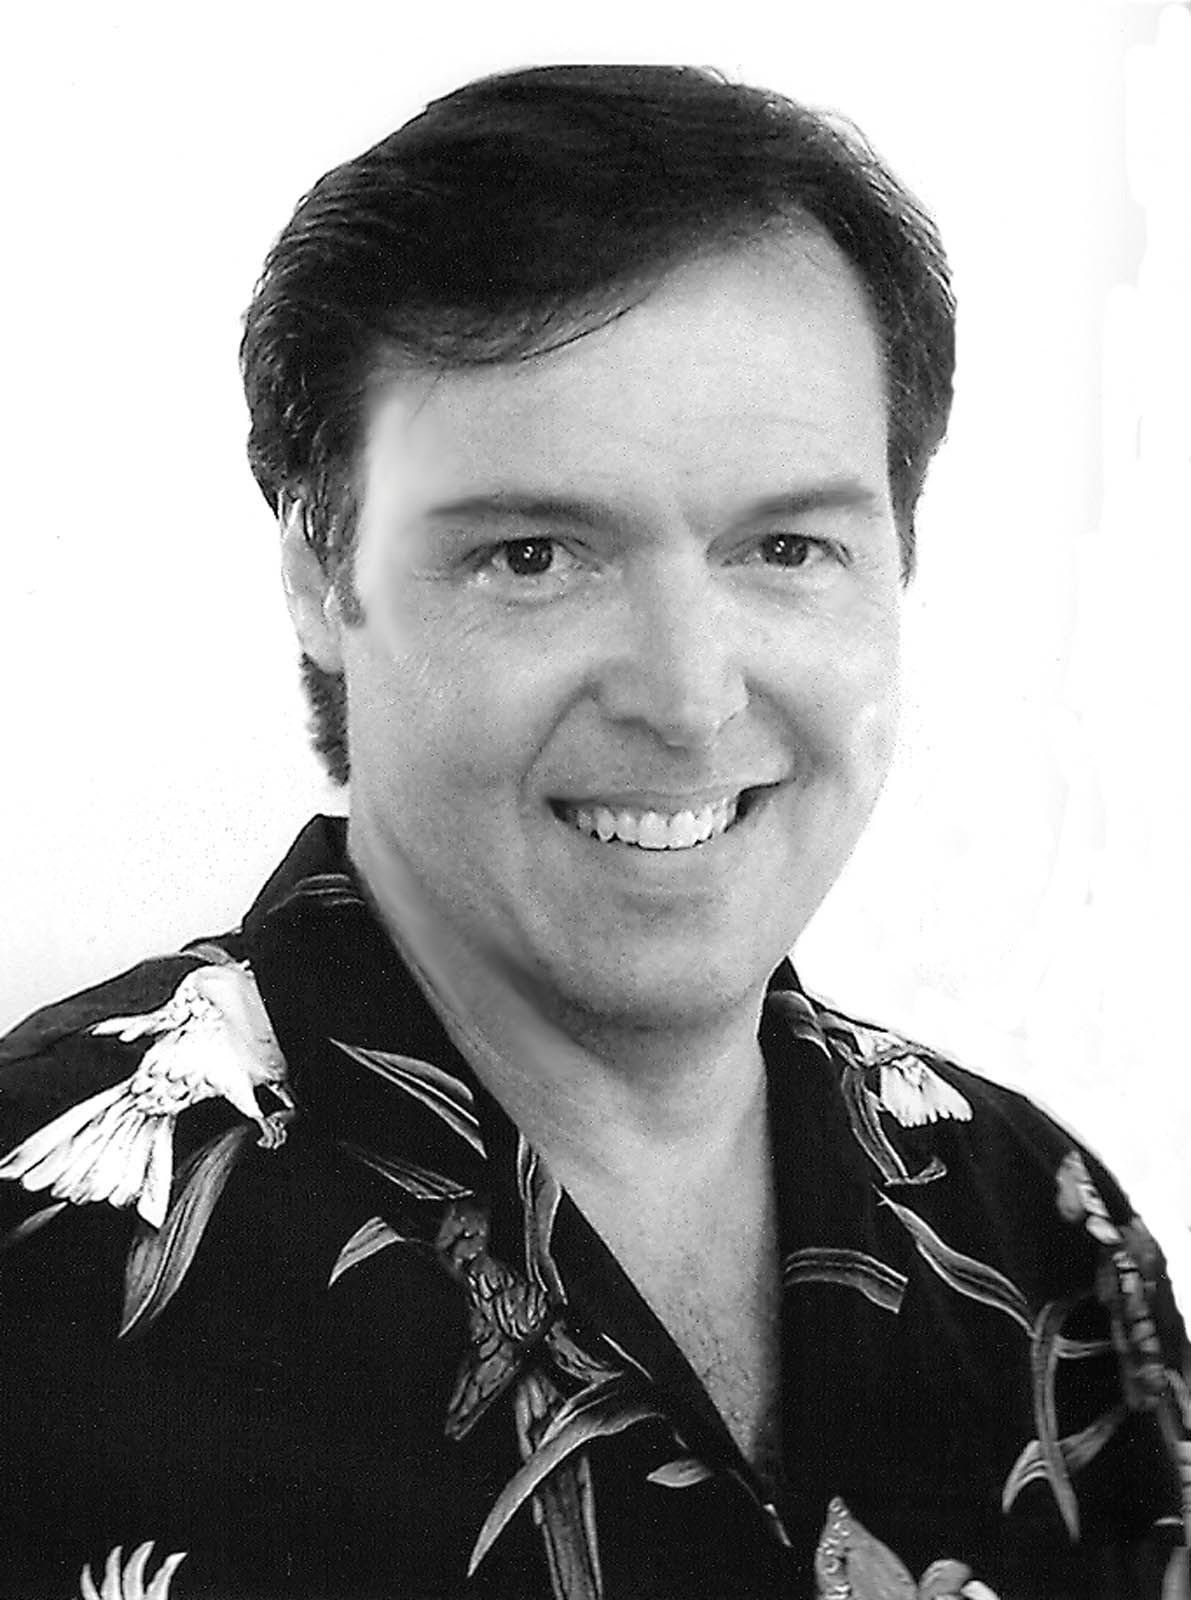 Michael Wozniak